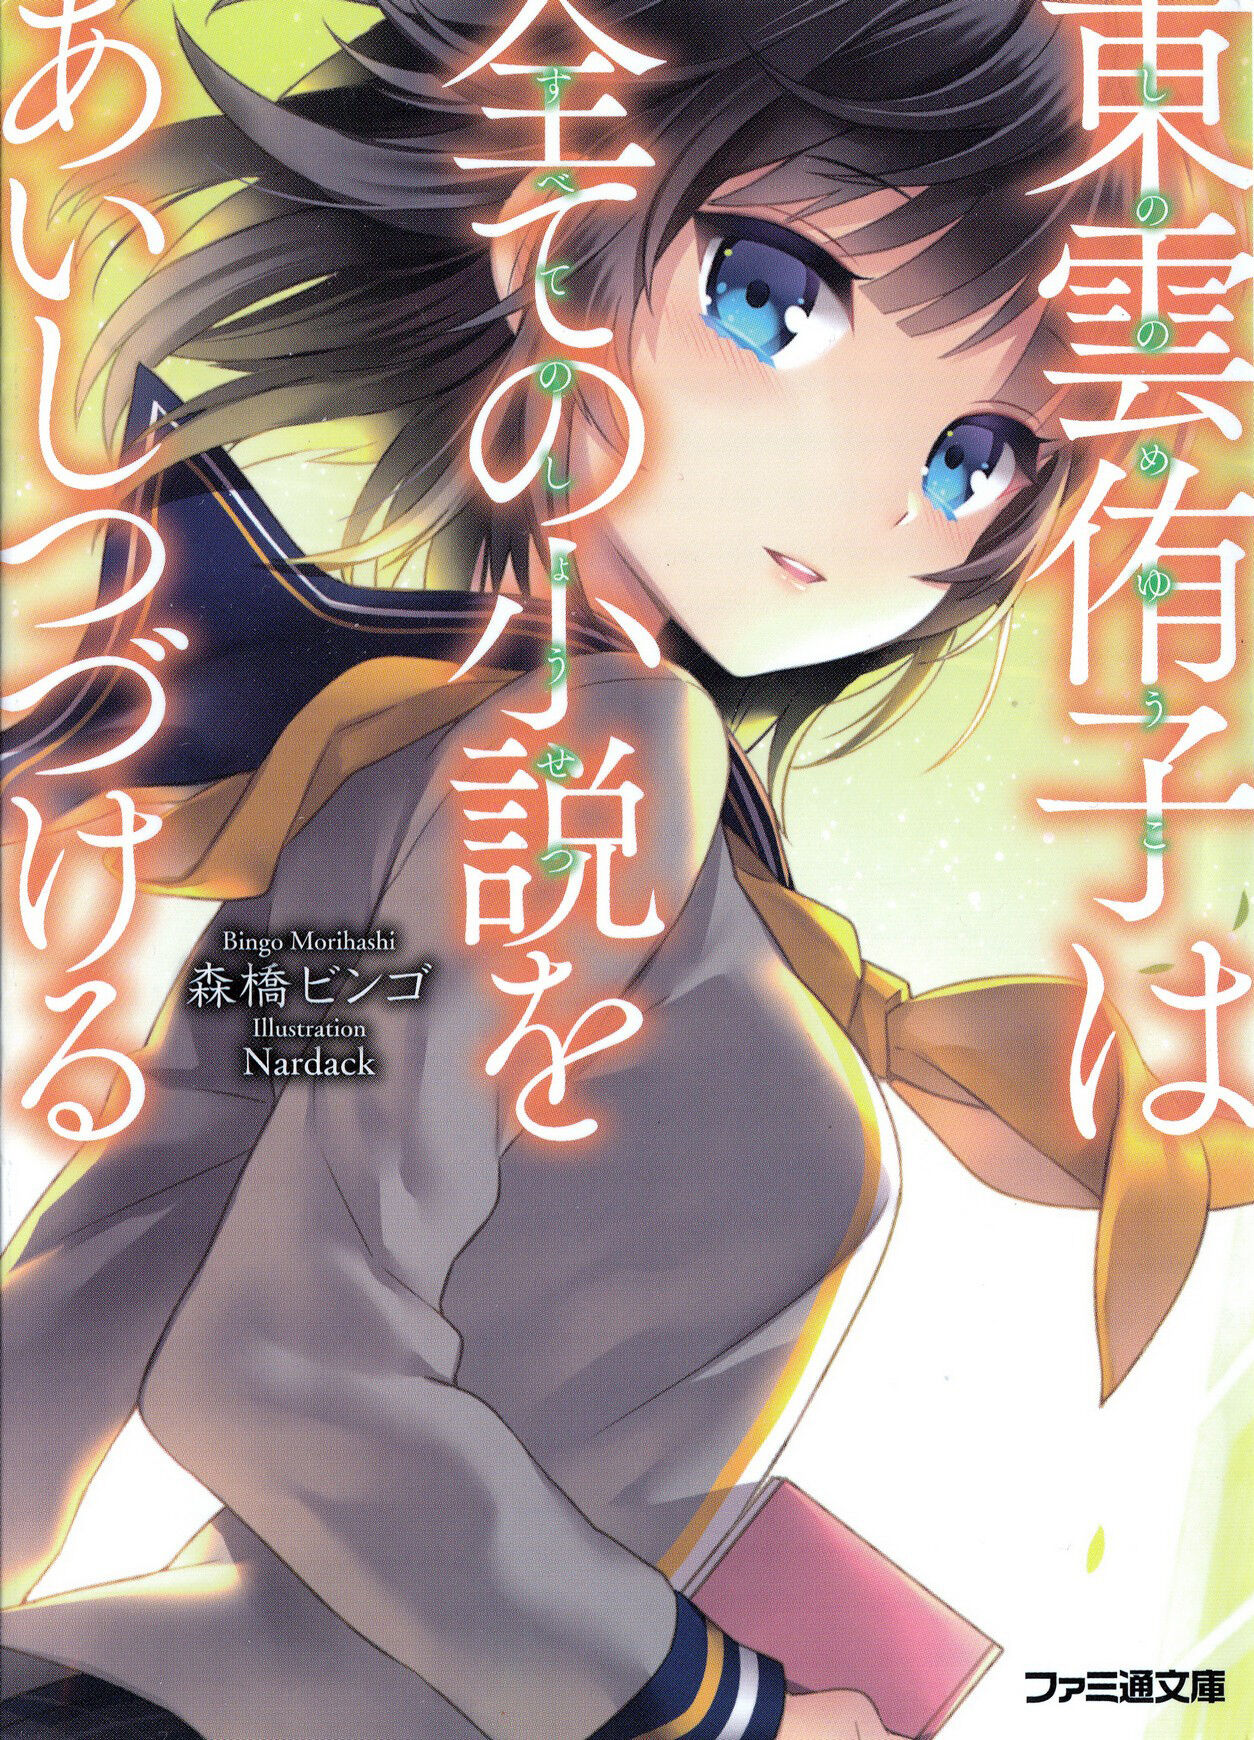 Shinonome Yuuko Series Sonako Light Novel Wiki Fandom